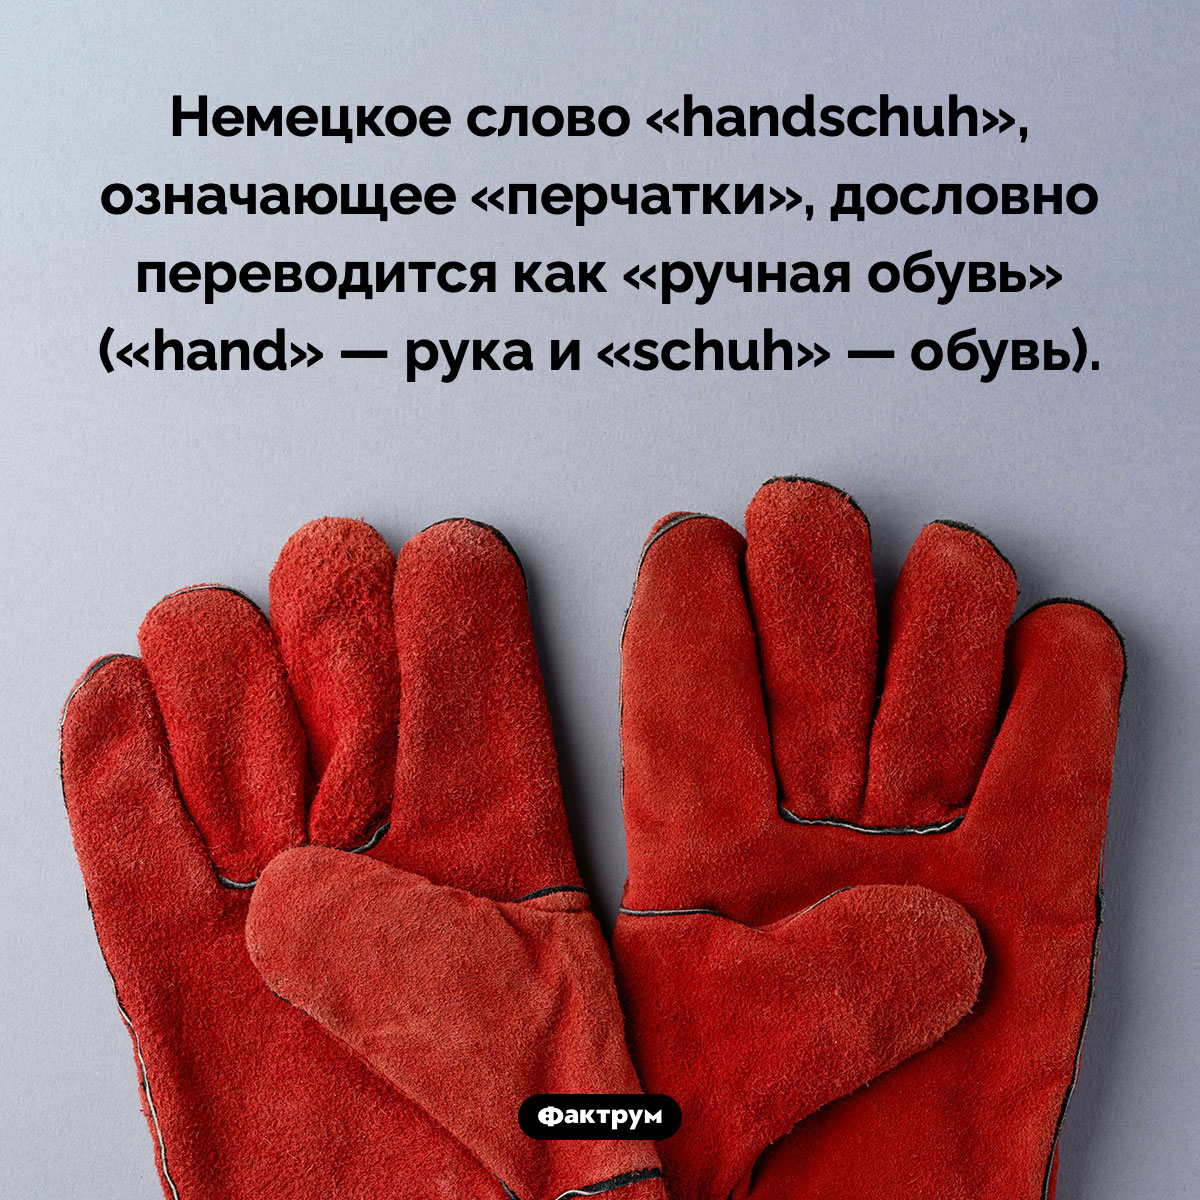 Ручная обувь. Немецкое слово «handschuh», означающее «перчатки», дословно переводится как «ручная обувь» («hand» — рука и «schuh» — обувь).